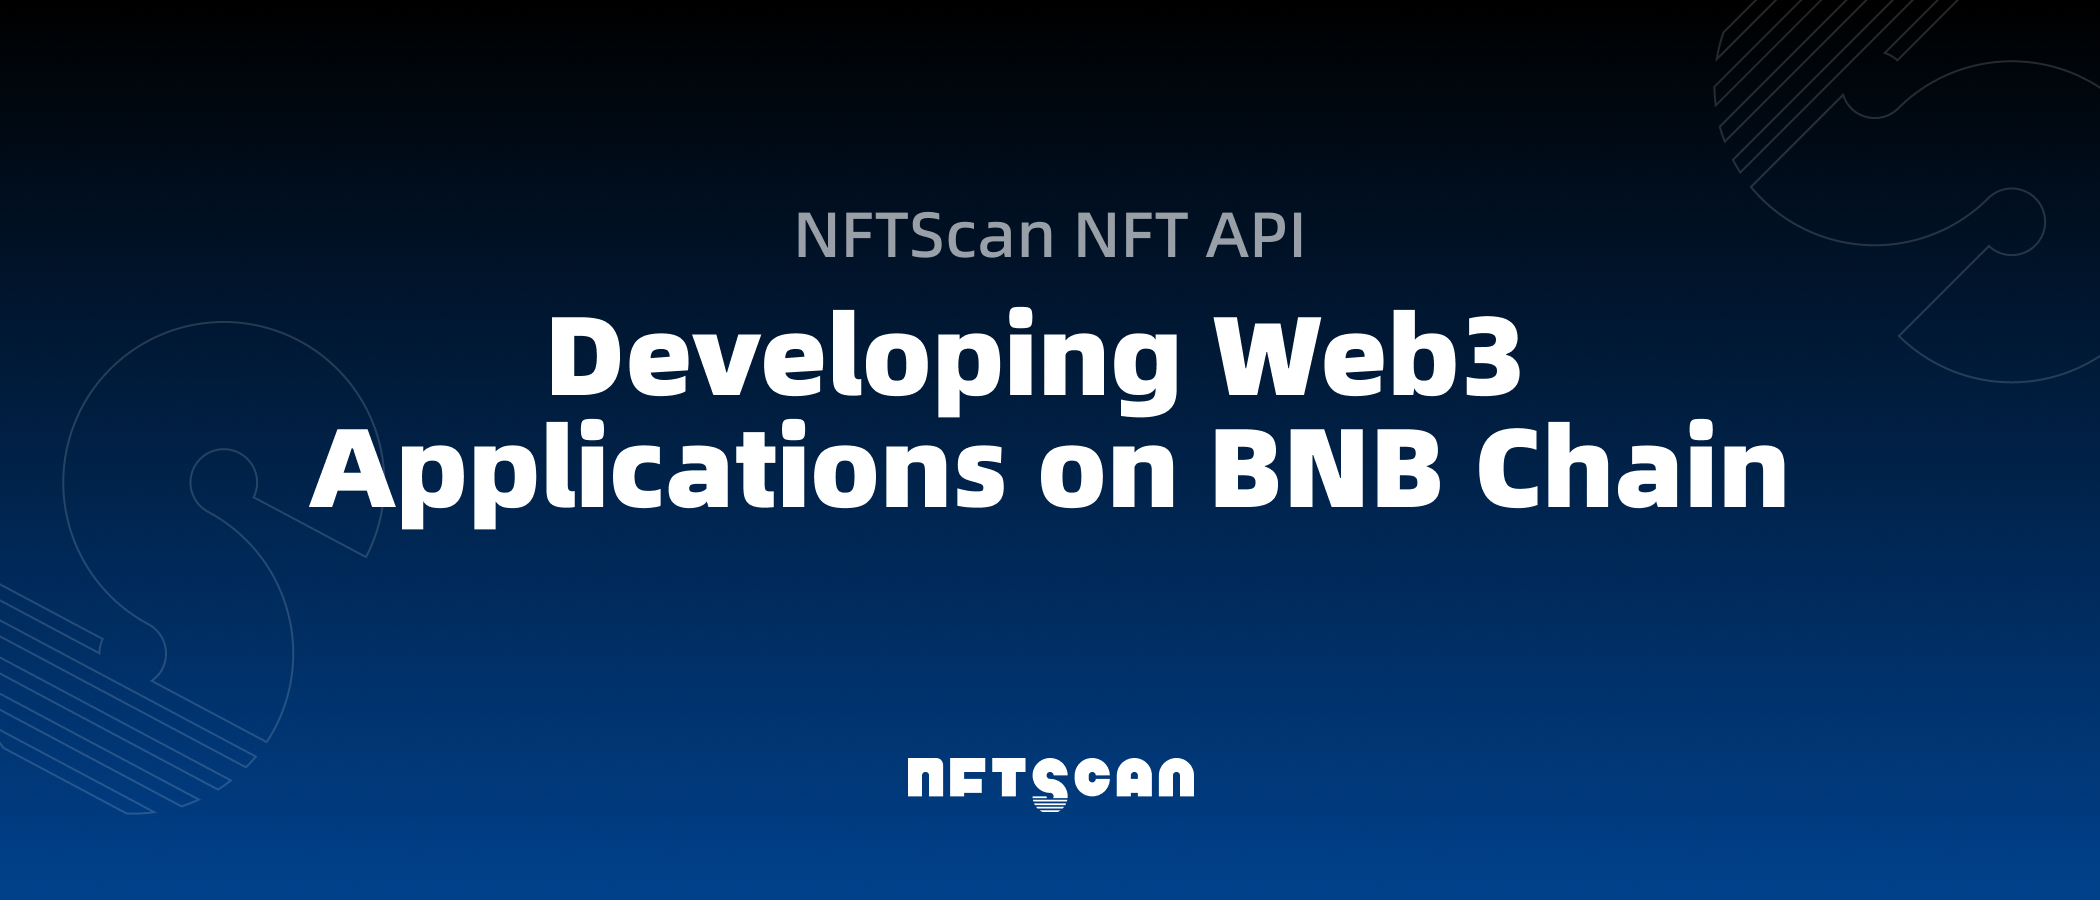 如何使用 NFTScan NFT API 在 BNB Chain 网络上开发 Web3 应用